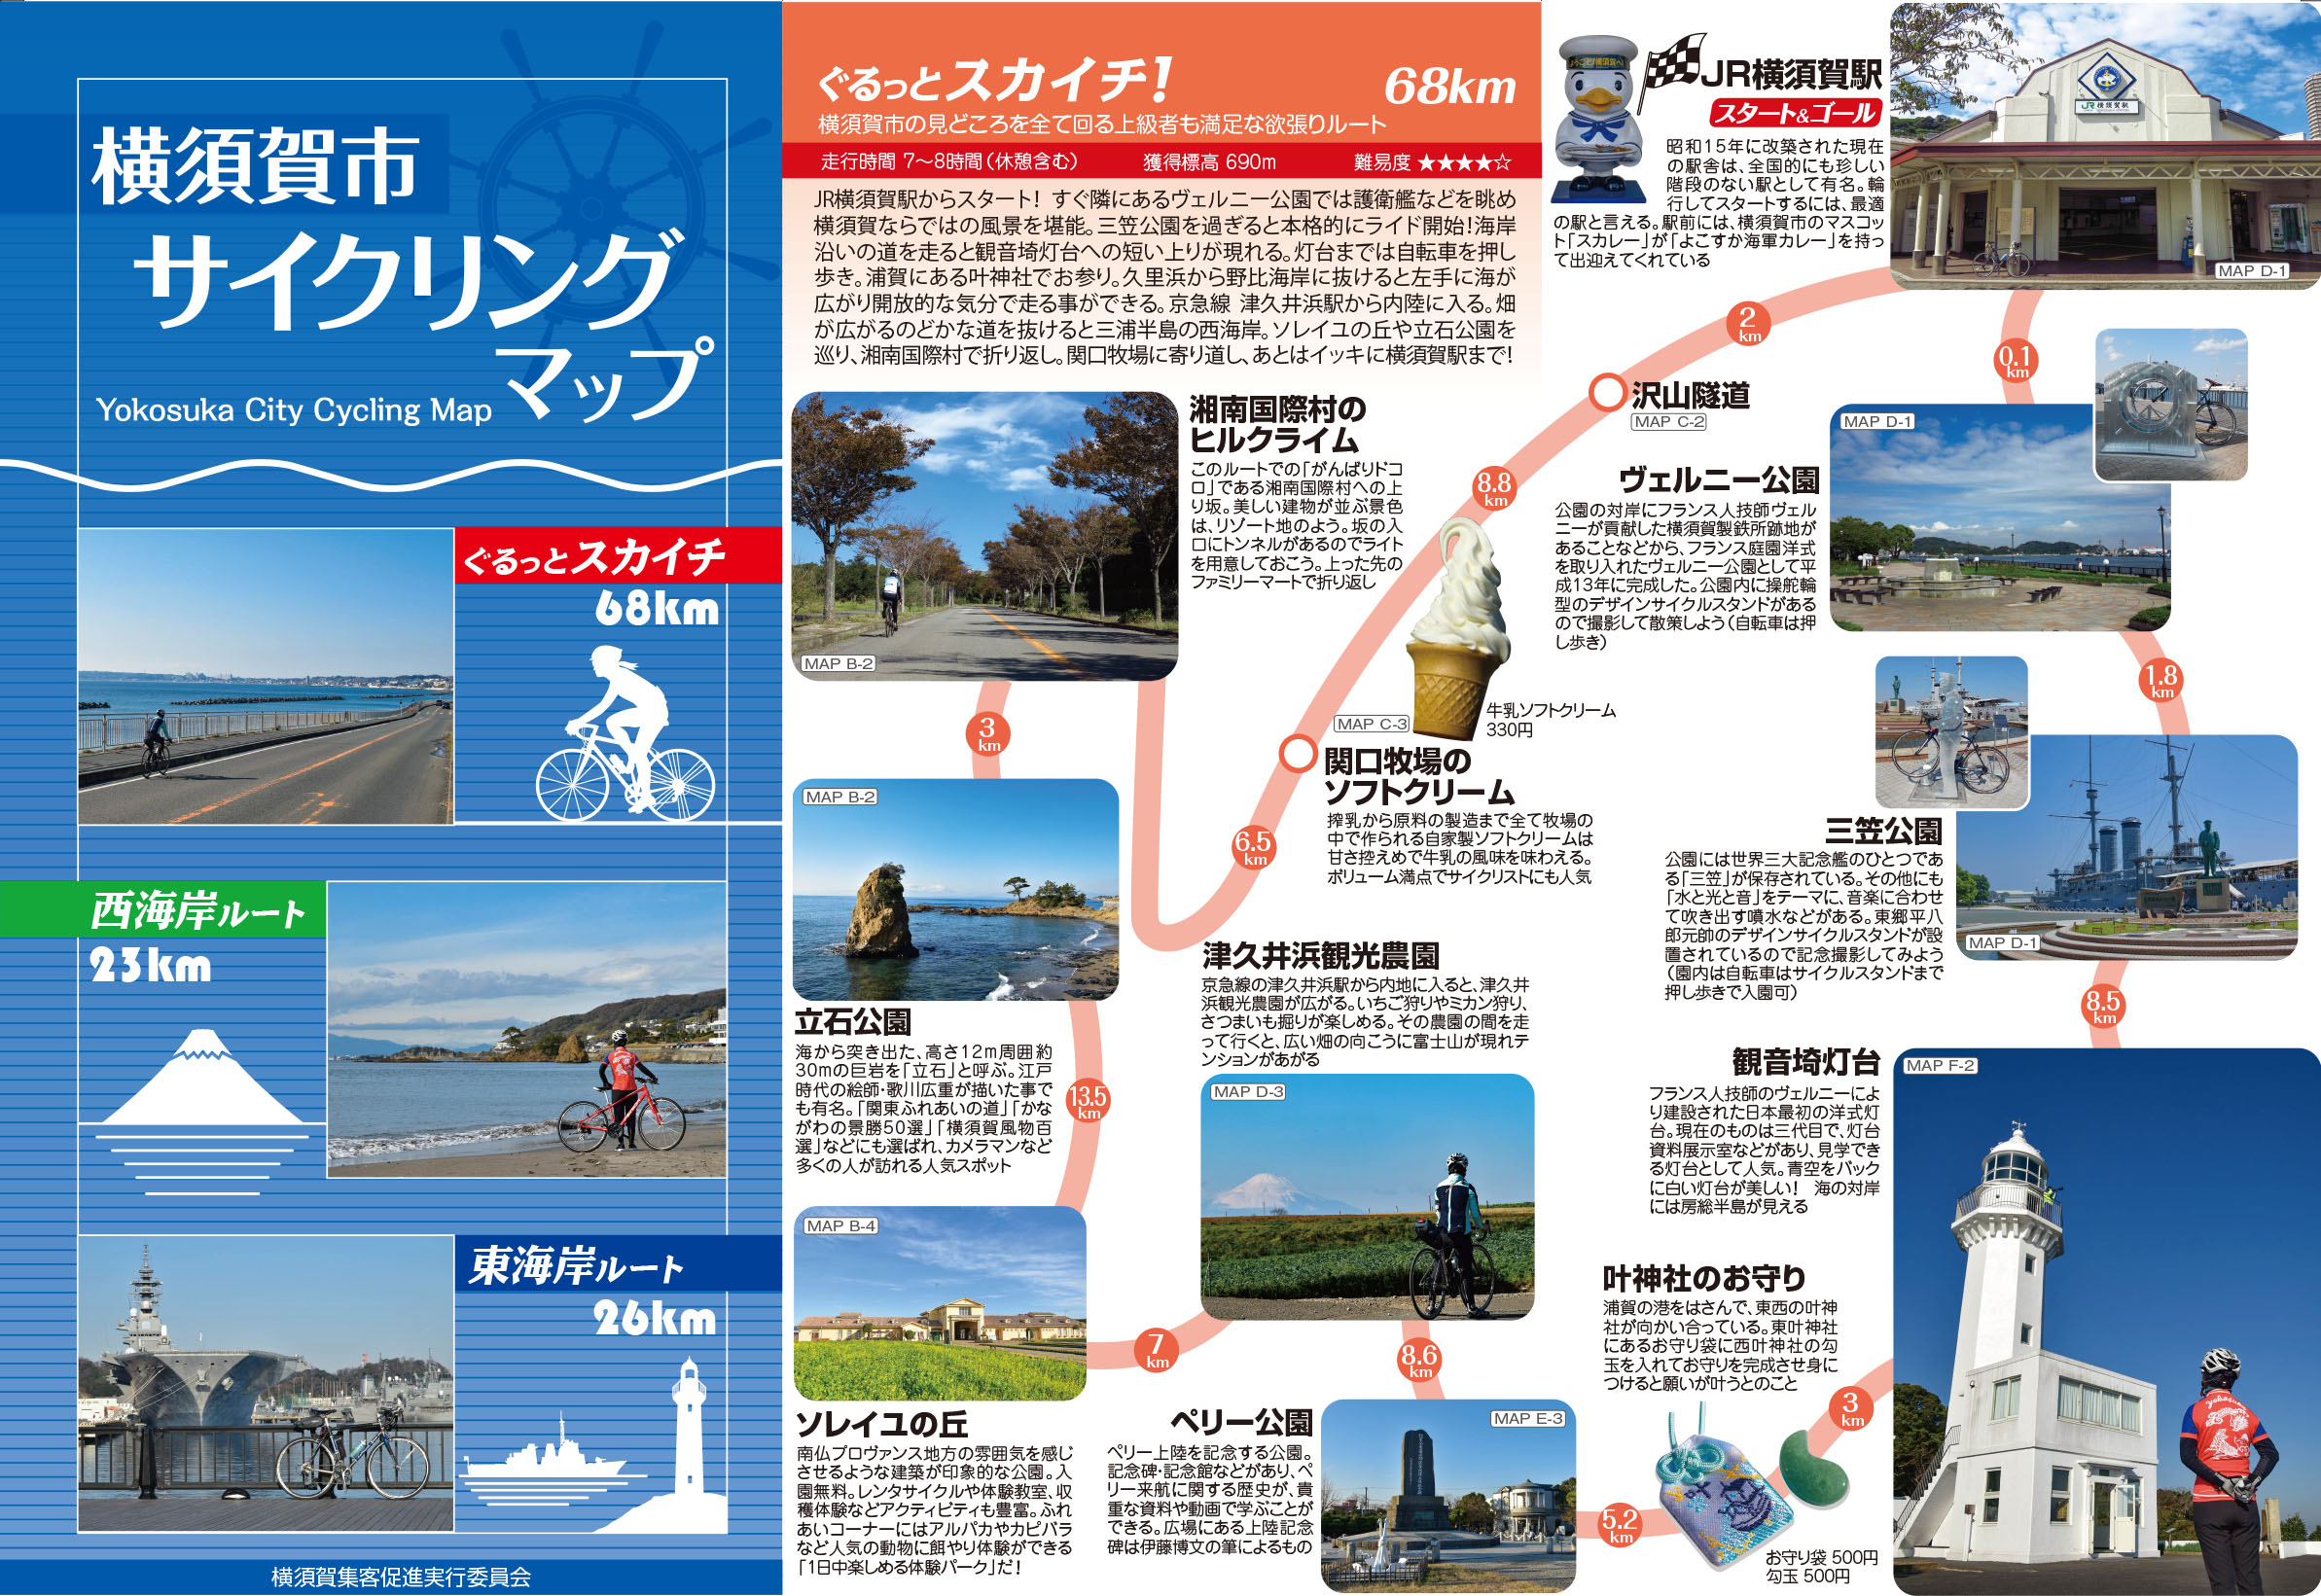 横須賀サイクリング 旬の情報 横須賀市観光情報サイト ここはヨコスカ